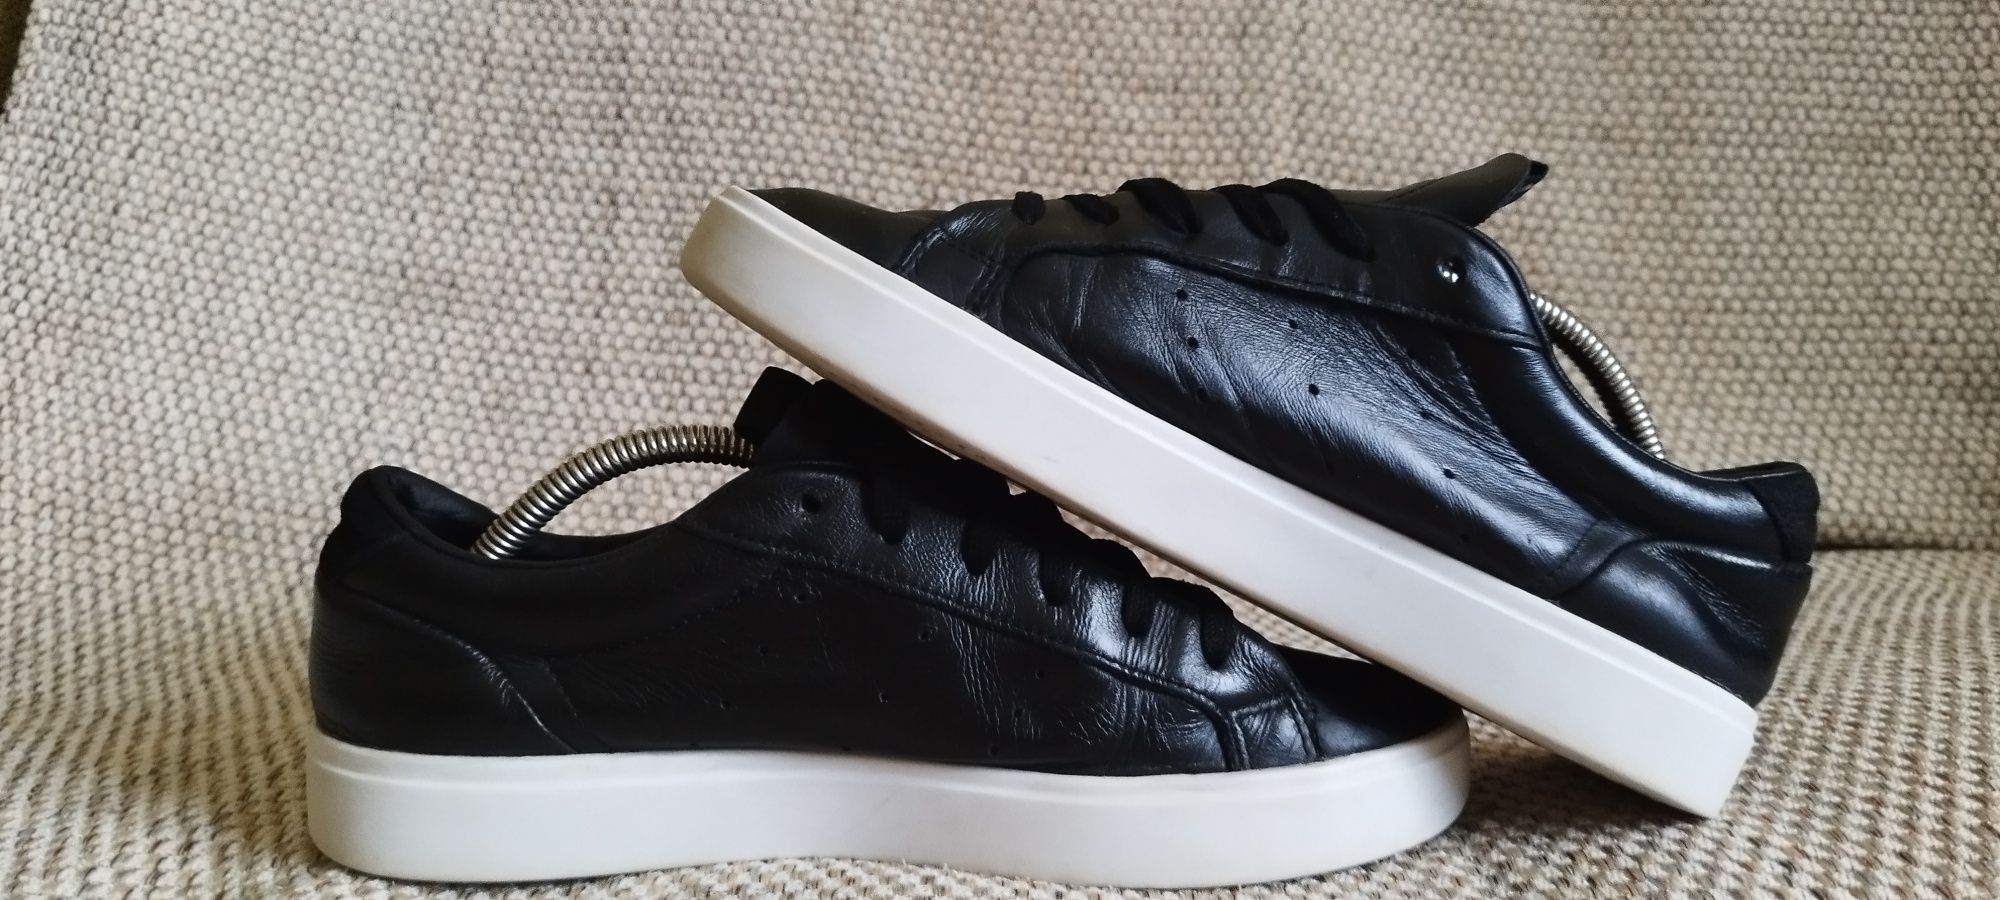 Кожаные кроссовки Adidas Sleek, 40 р., 26 см